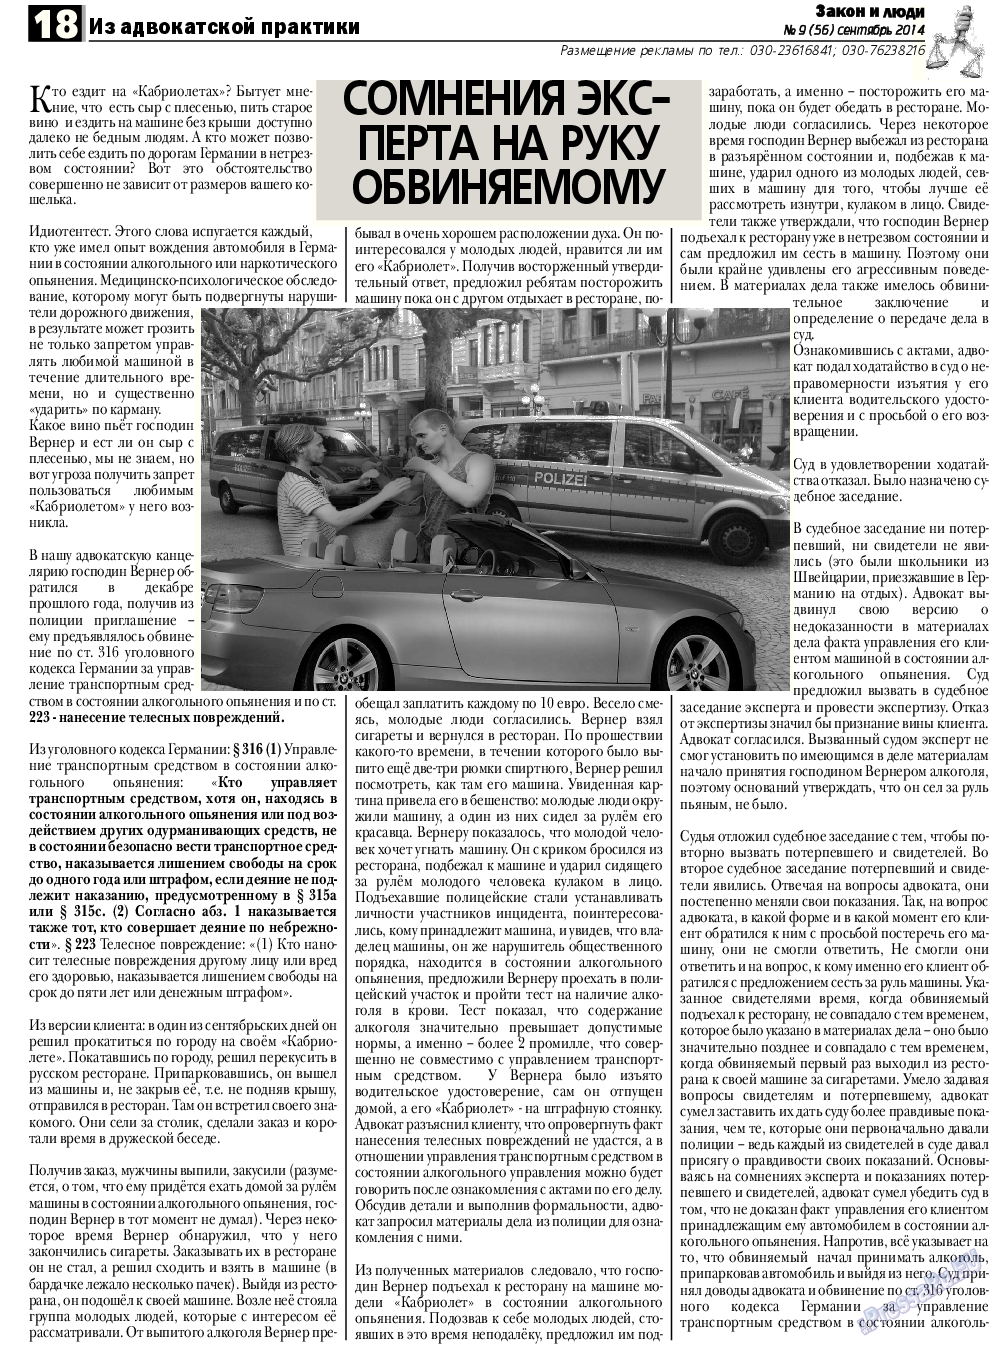 Закон и люди, газета. 2014 №9 стр.18